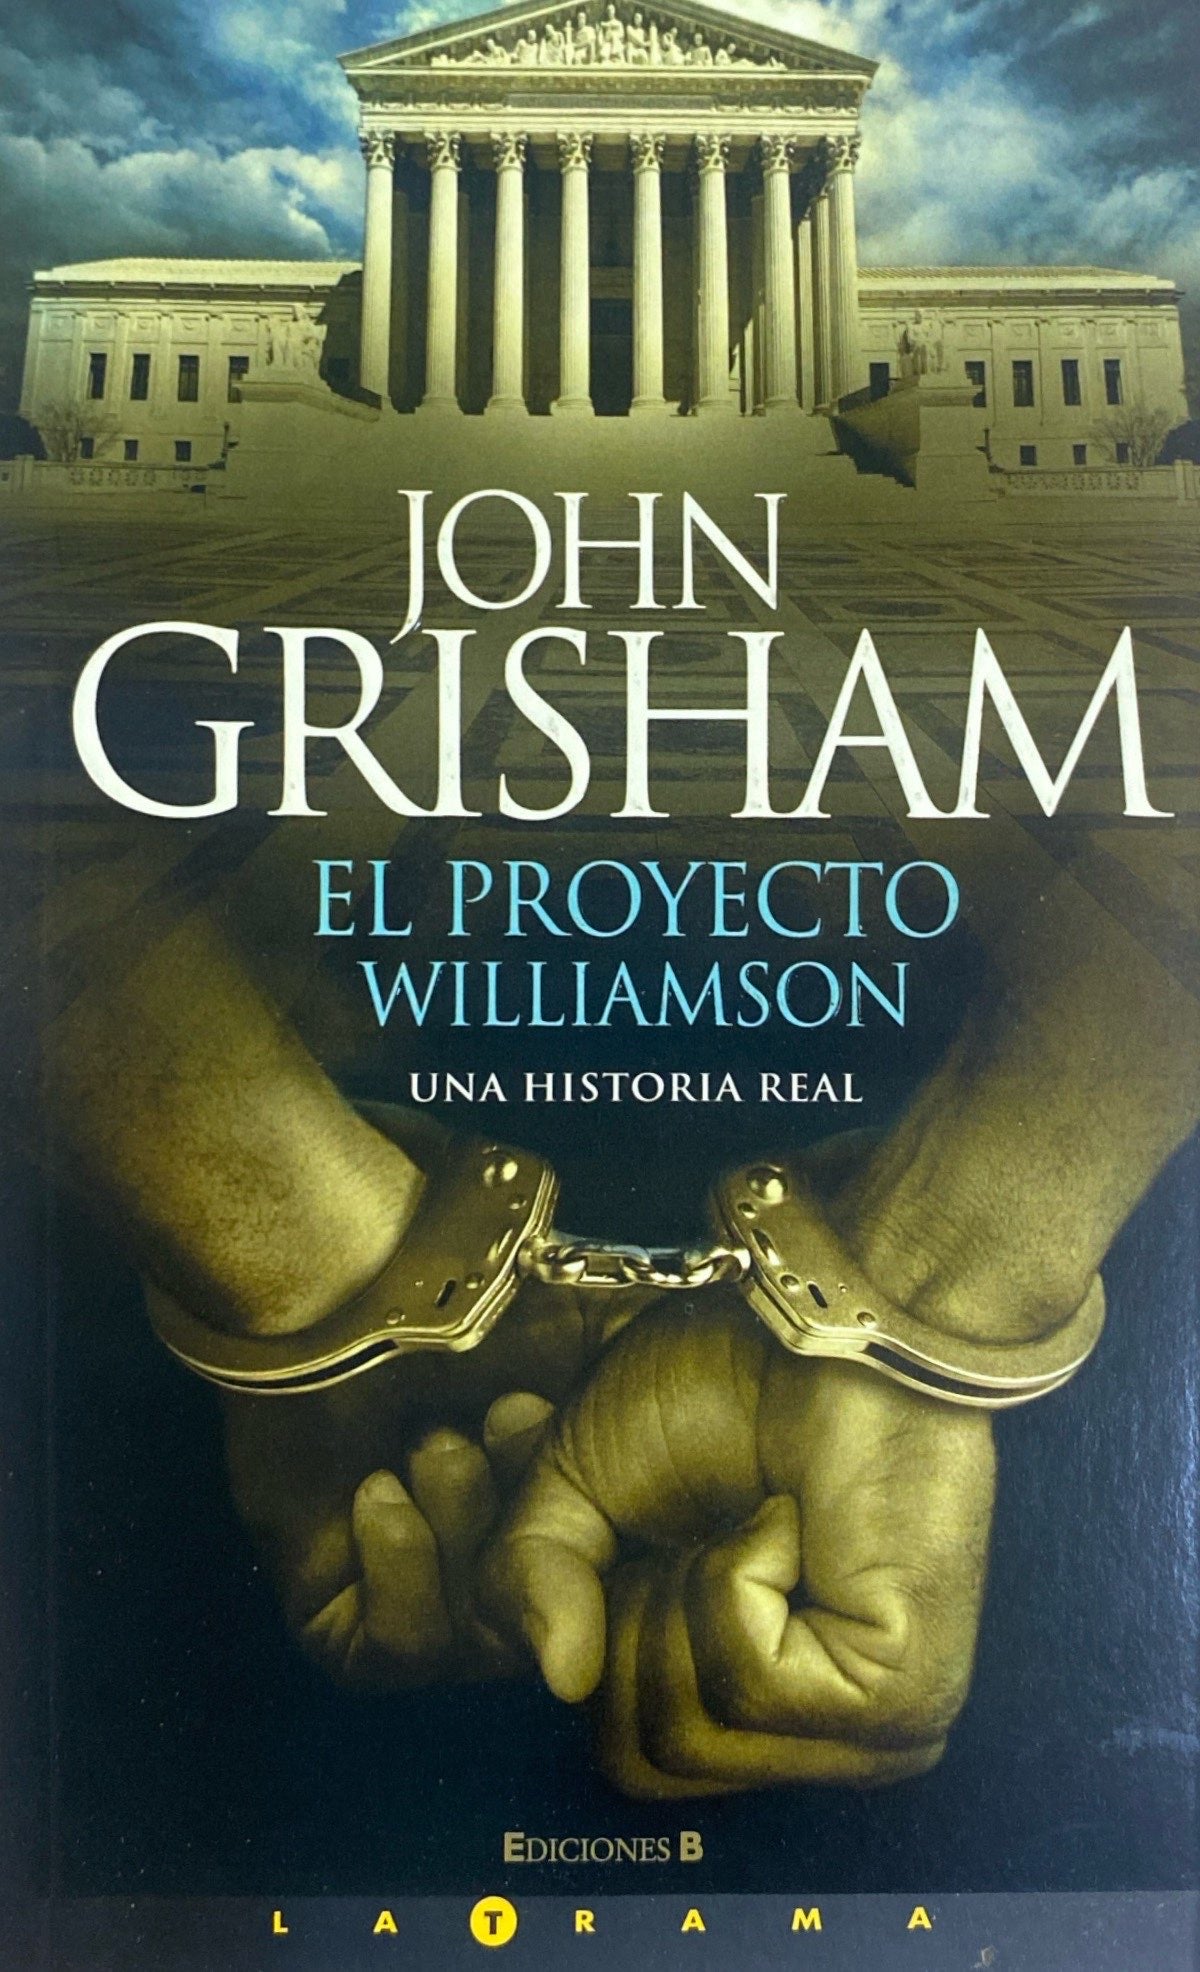 El proyecto williamson | John Grisham